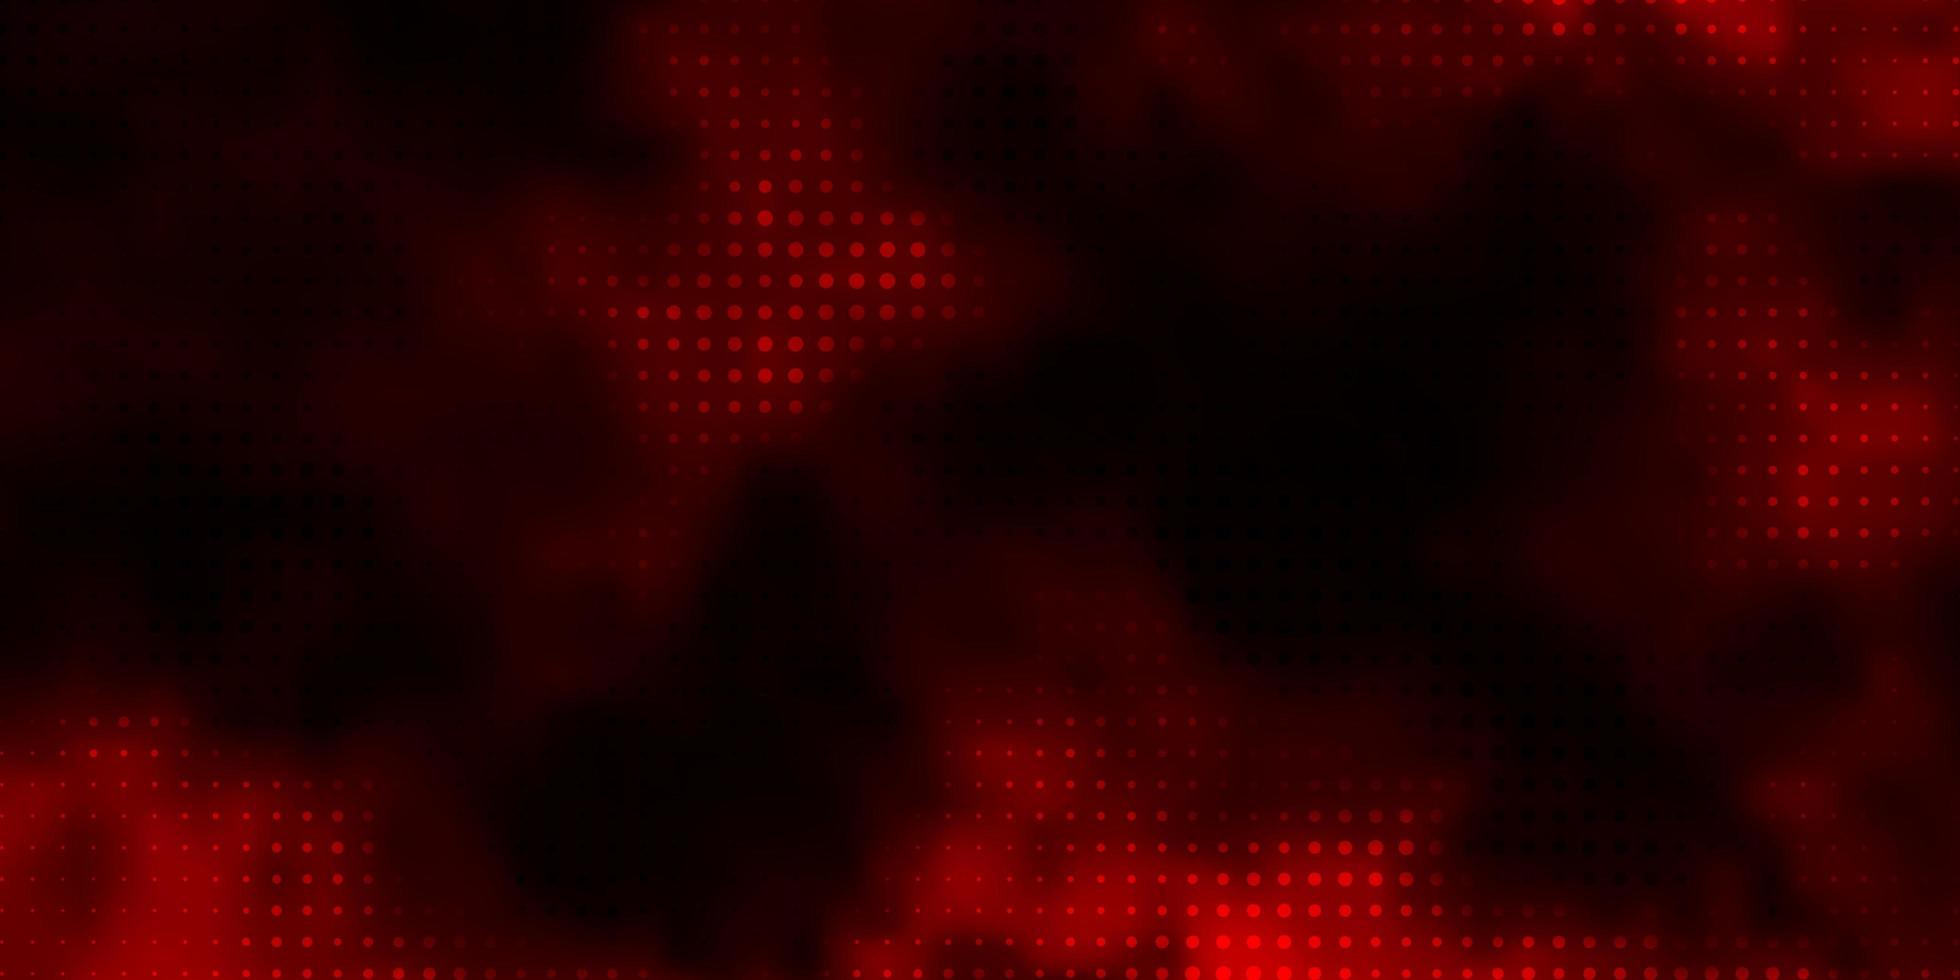 sfondo vettoriale rosso scuro con cerchi.